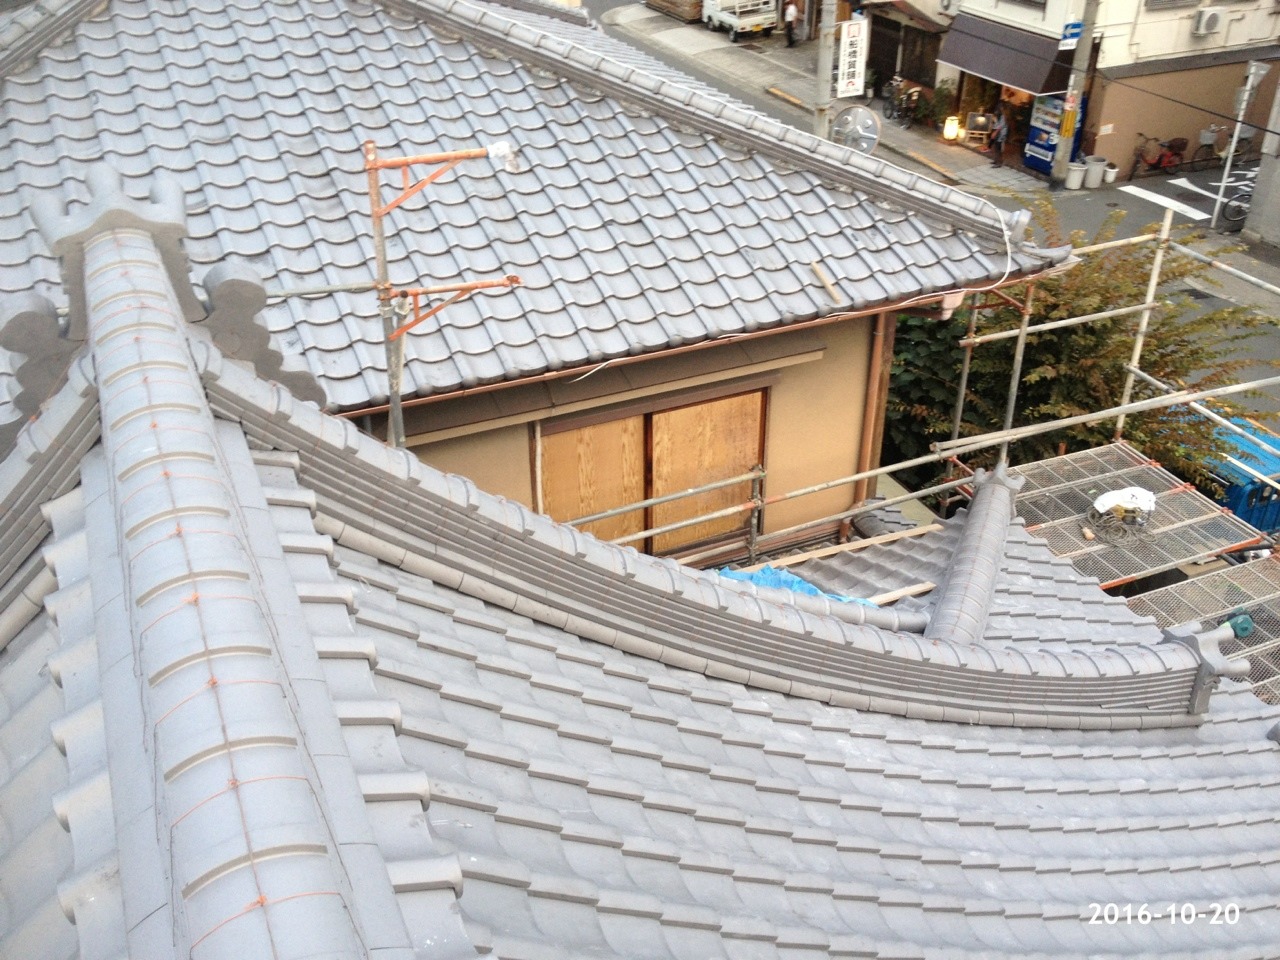 社寺の屋根工事